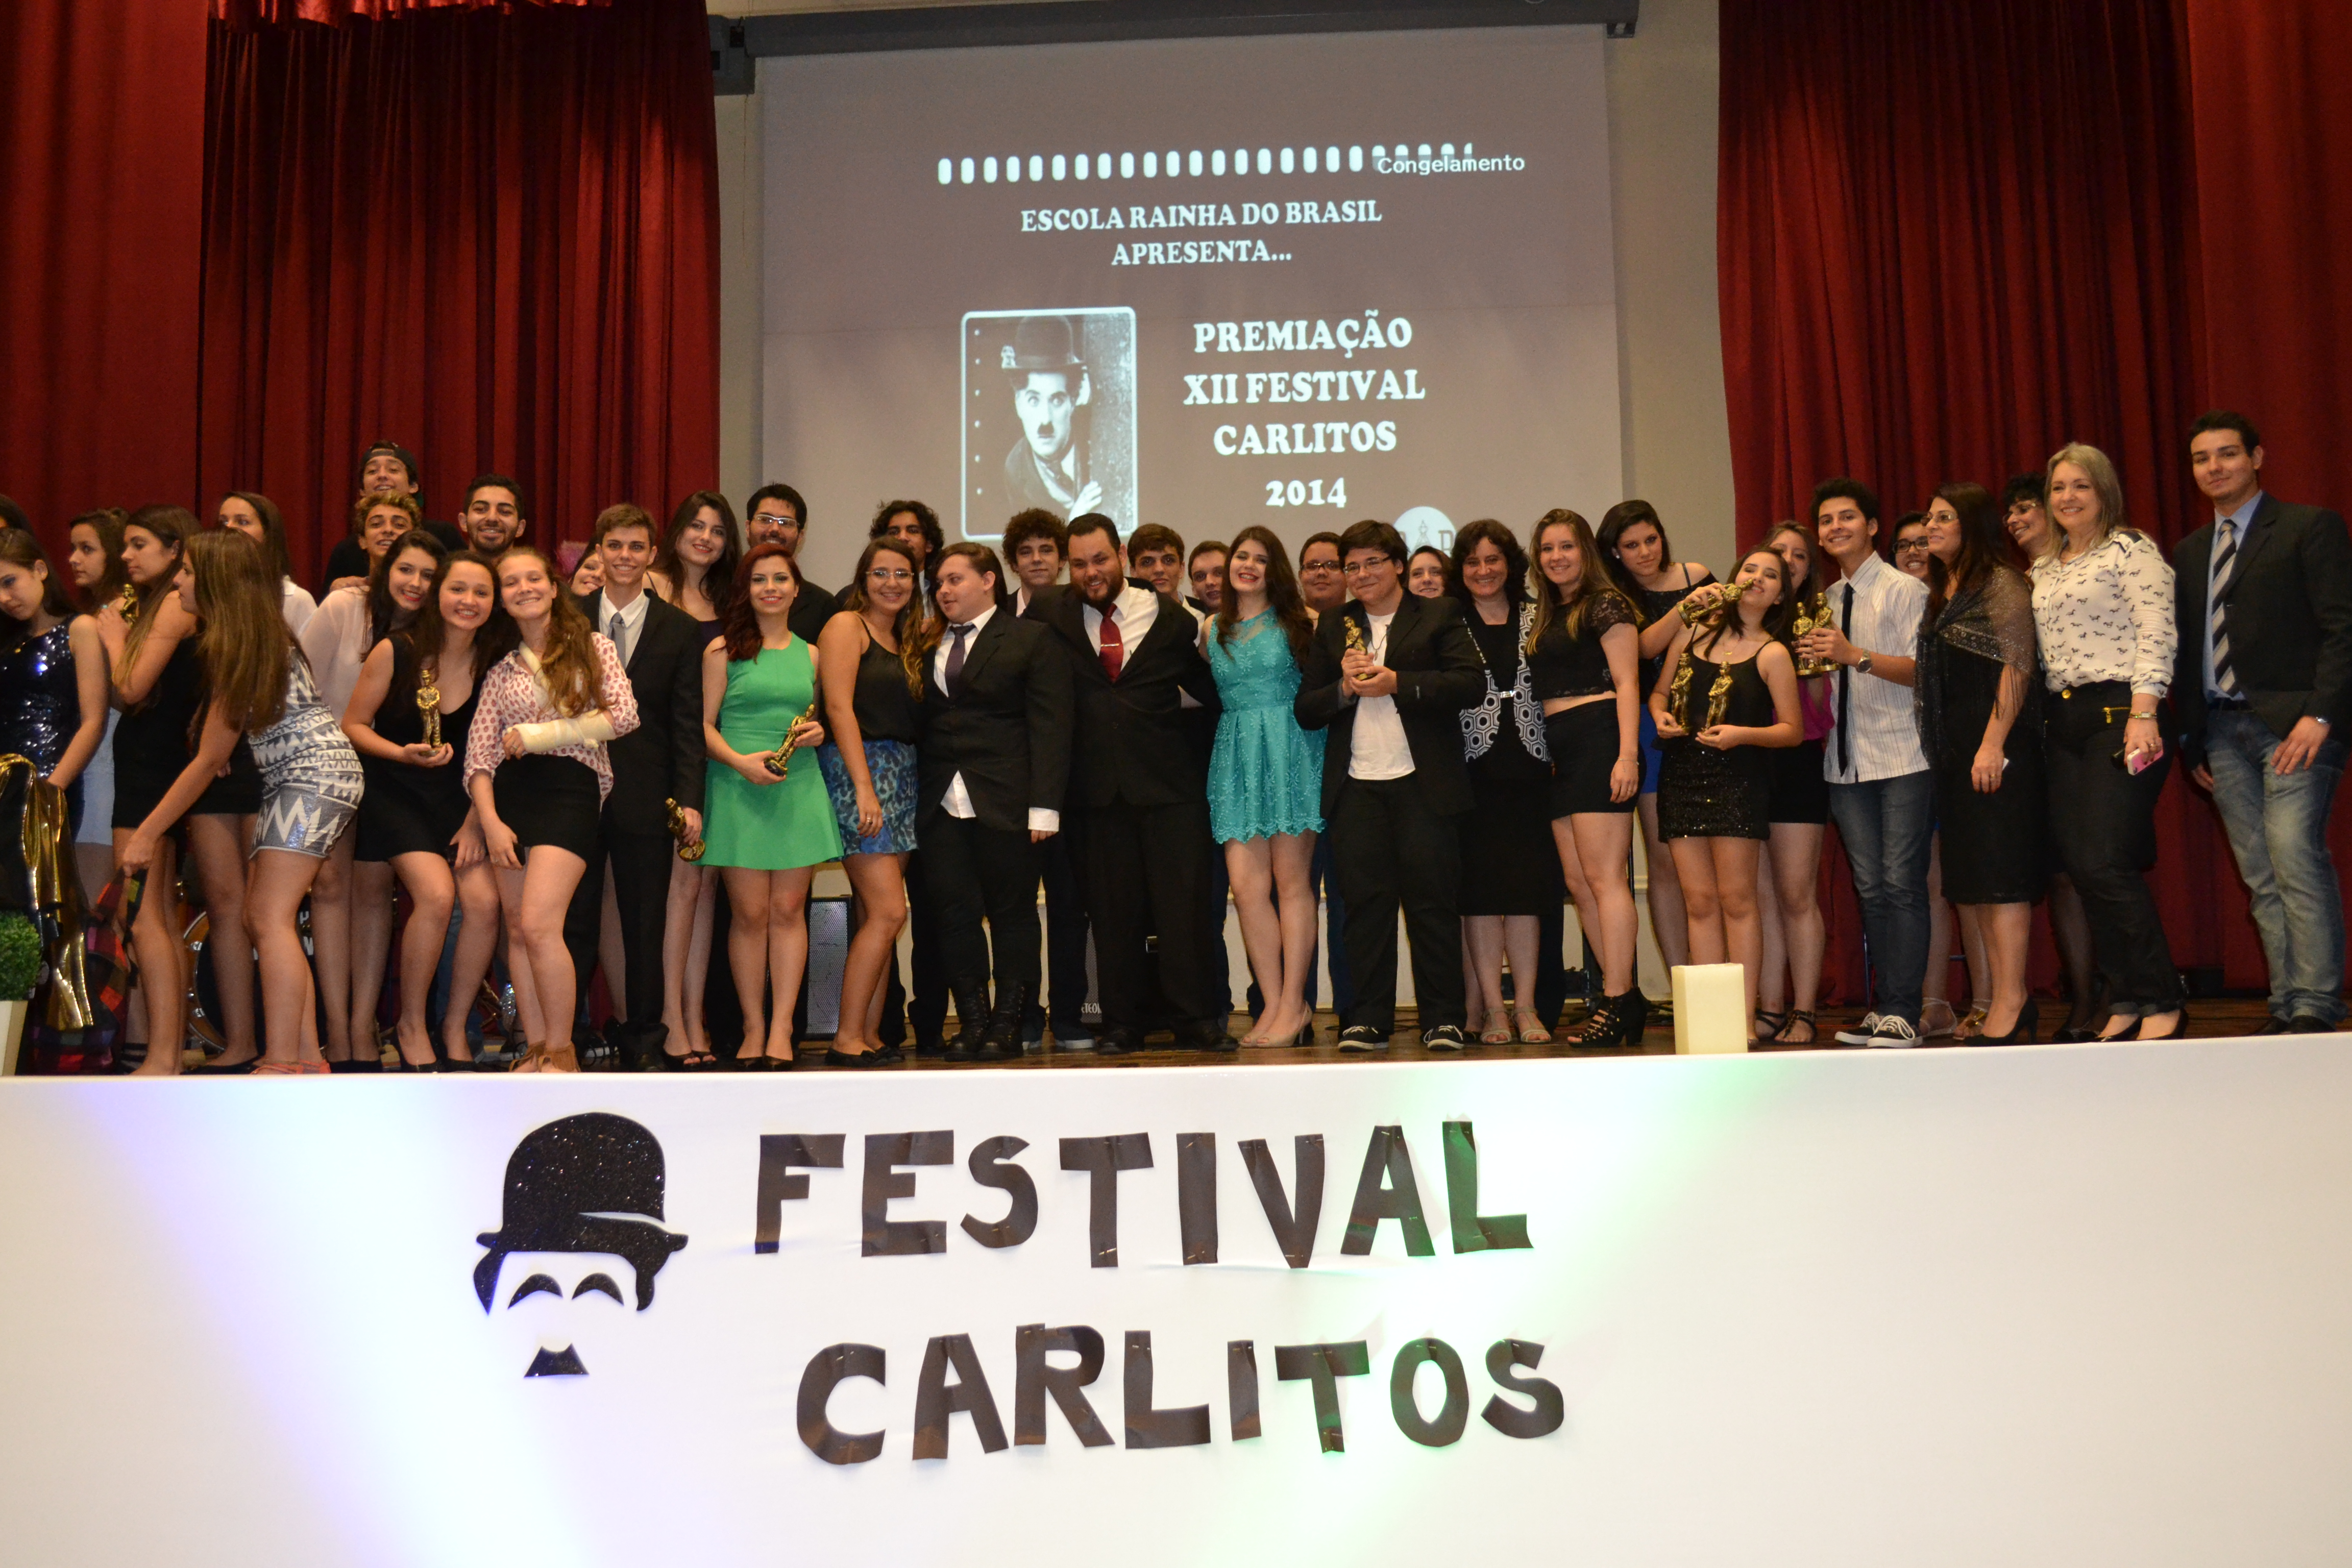 The Oscar Goes To: XII Festival Carlitos